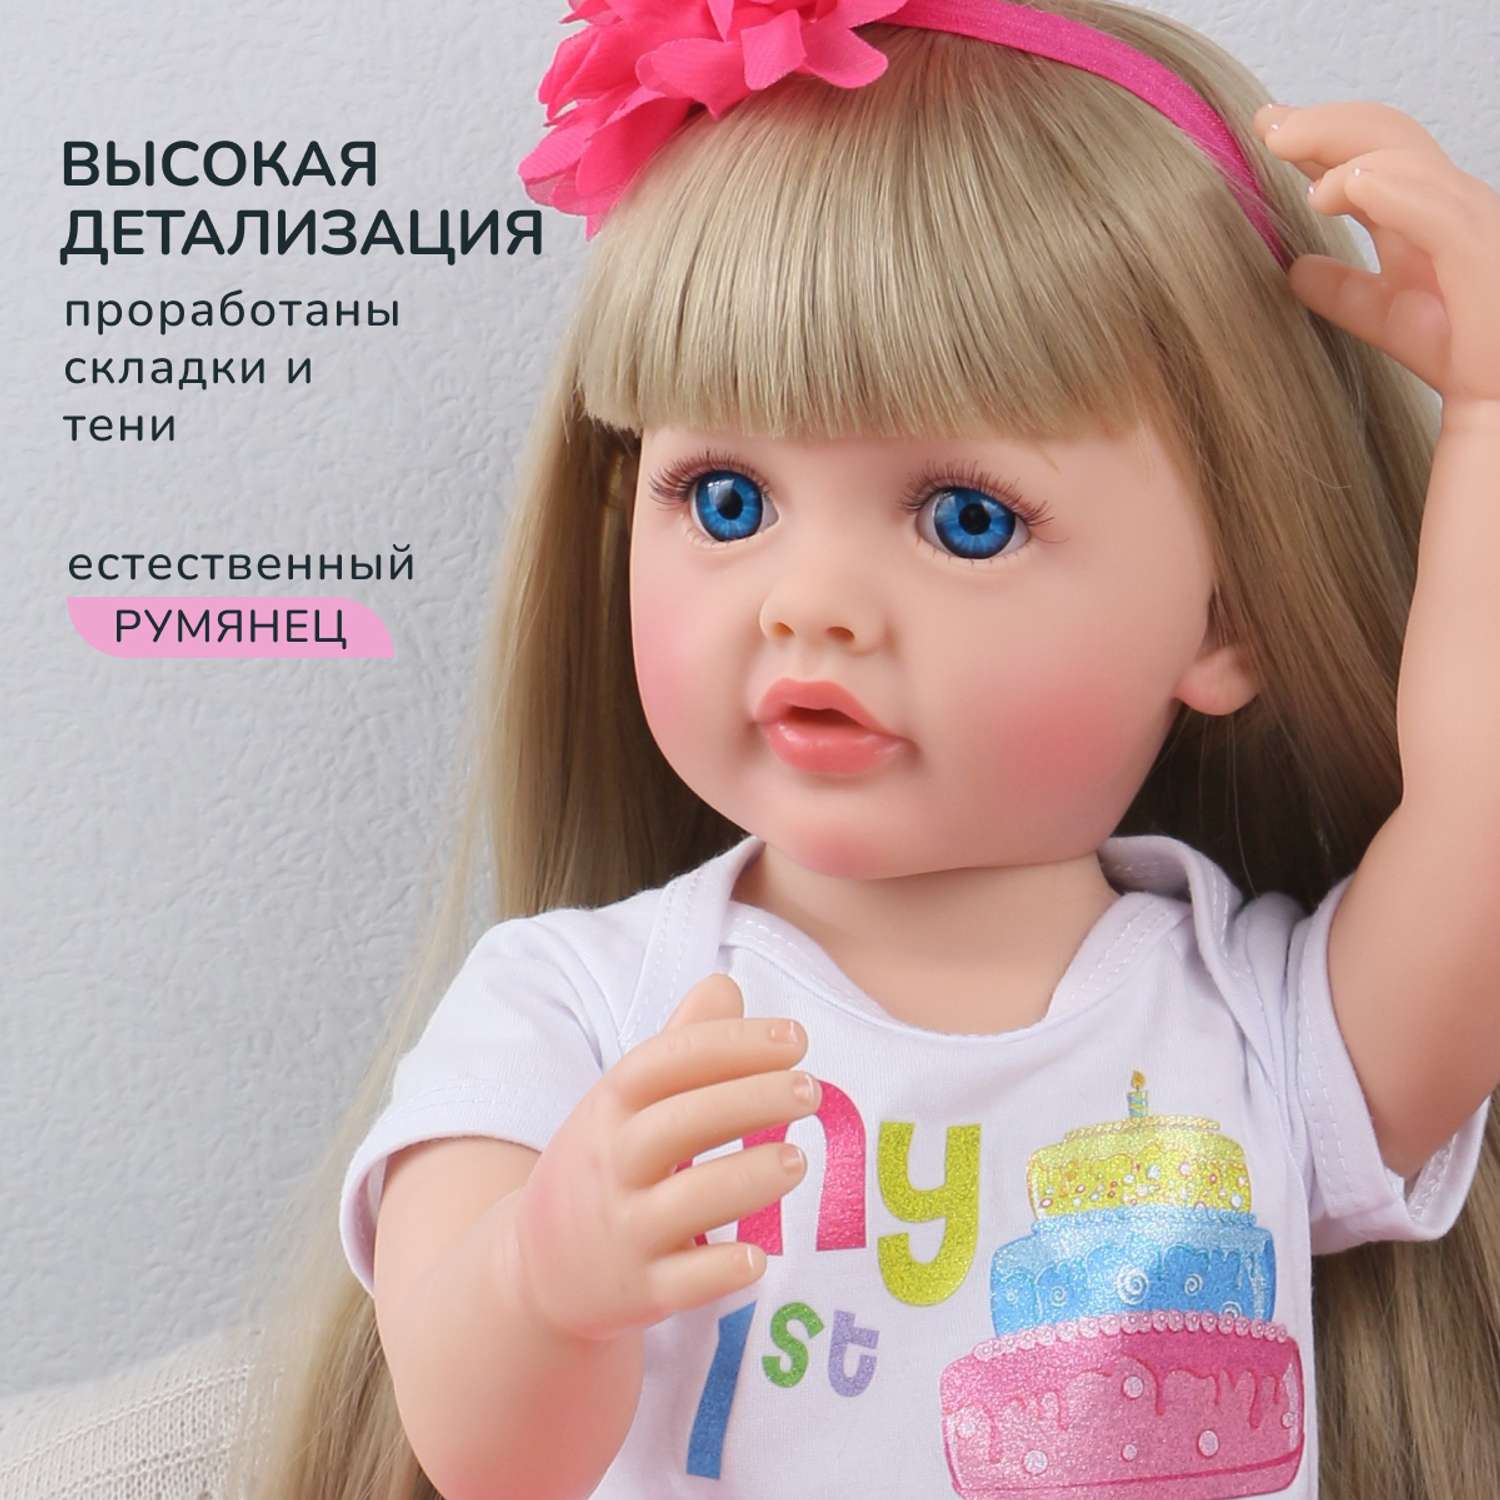 Кукла Реборн QA BABY Аврора девочка большая пупс набор игрушки для девочки 55 см 5512 - фото 3